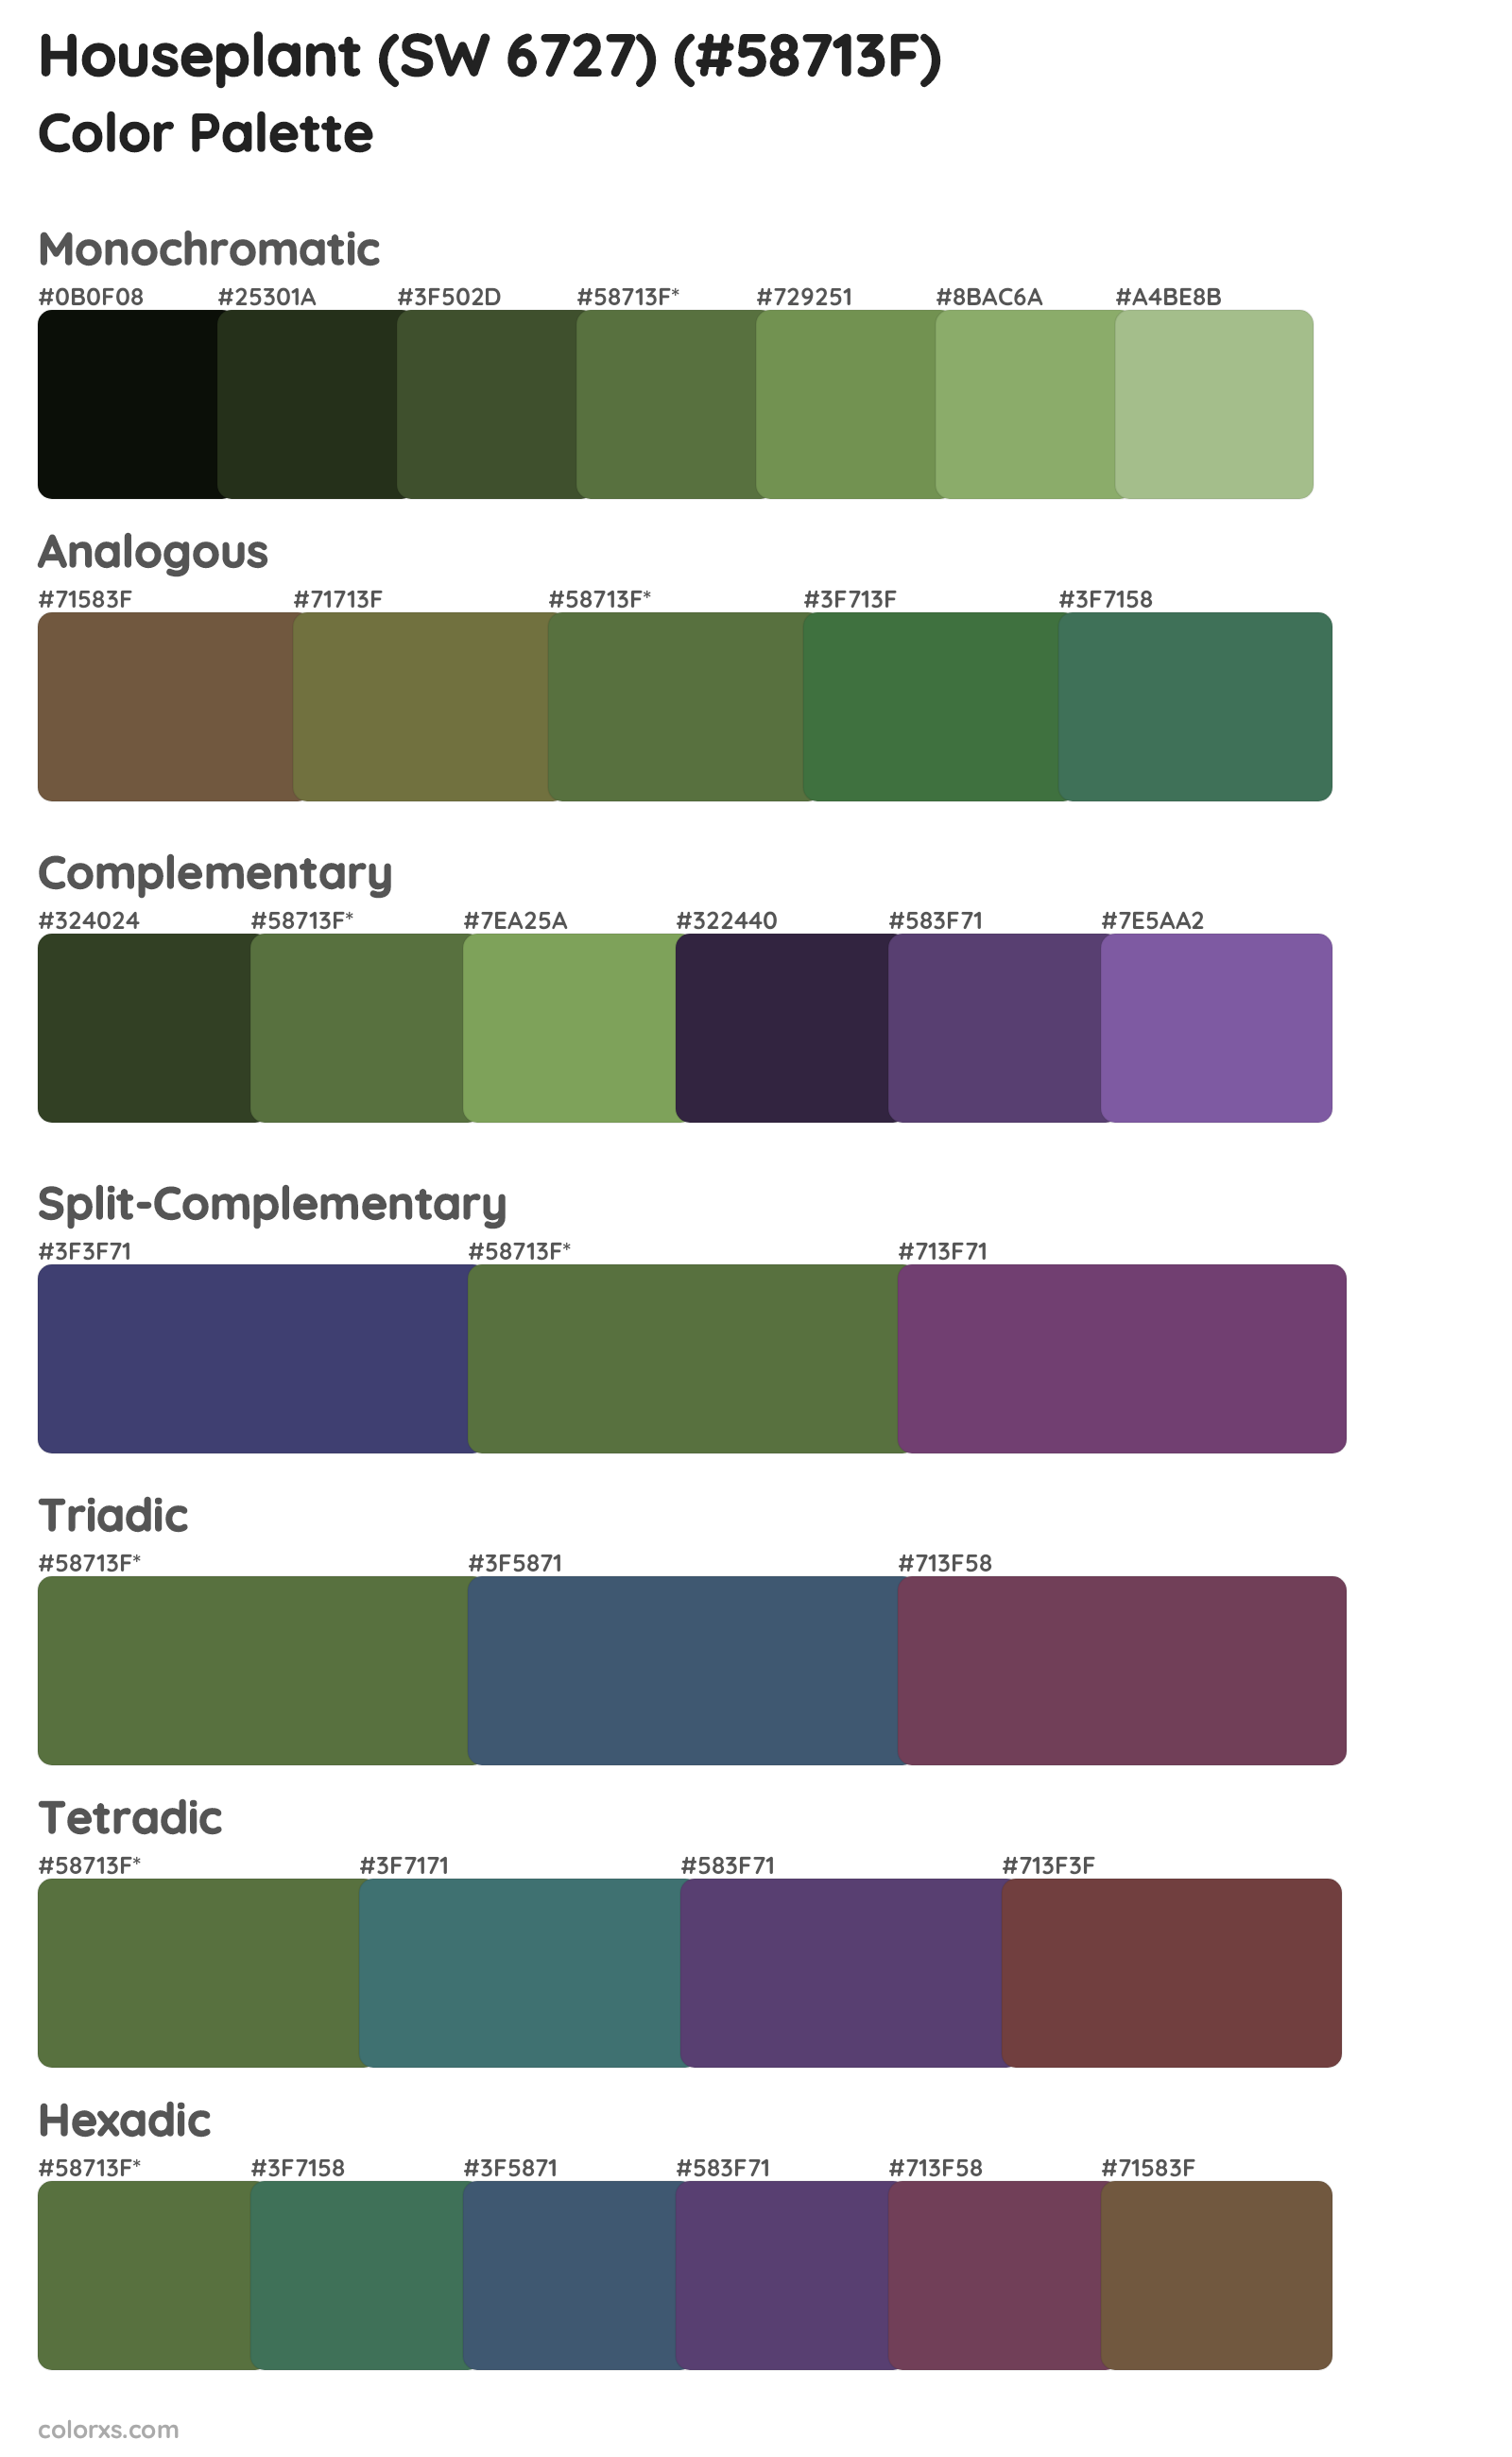 Houseplant (SW 6727) Color Scheme Palettes